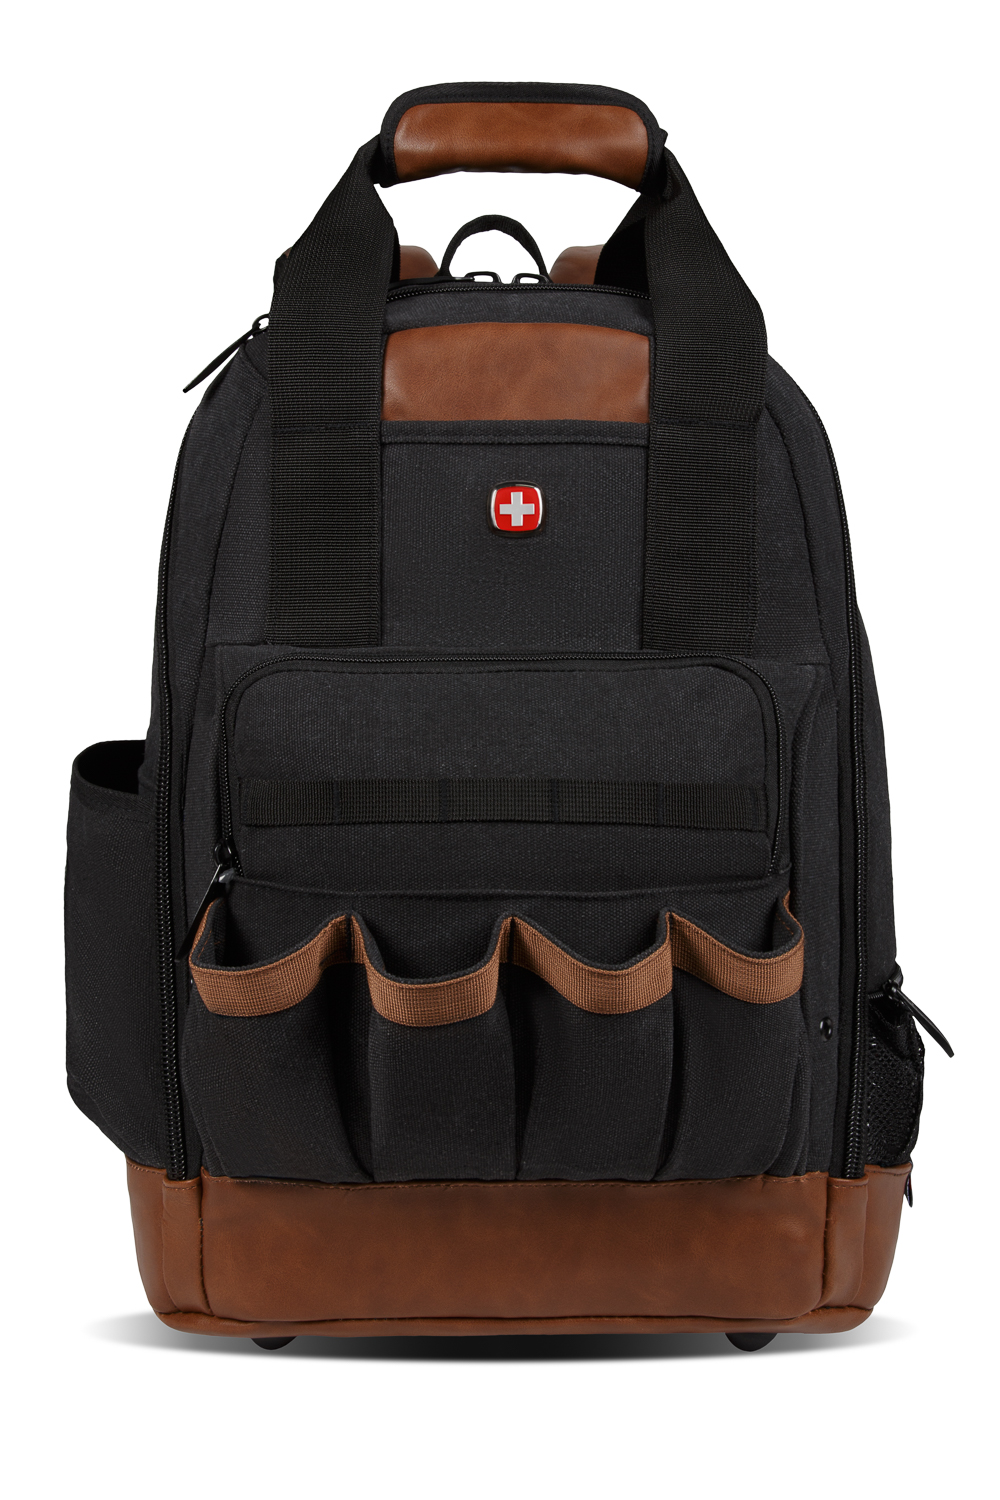 Swissgear 2767 Work Pack Tool Backpack - Canvas Black Brown, ___